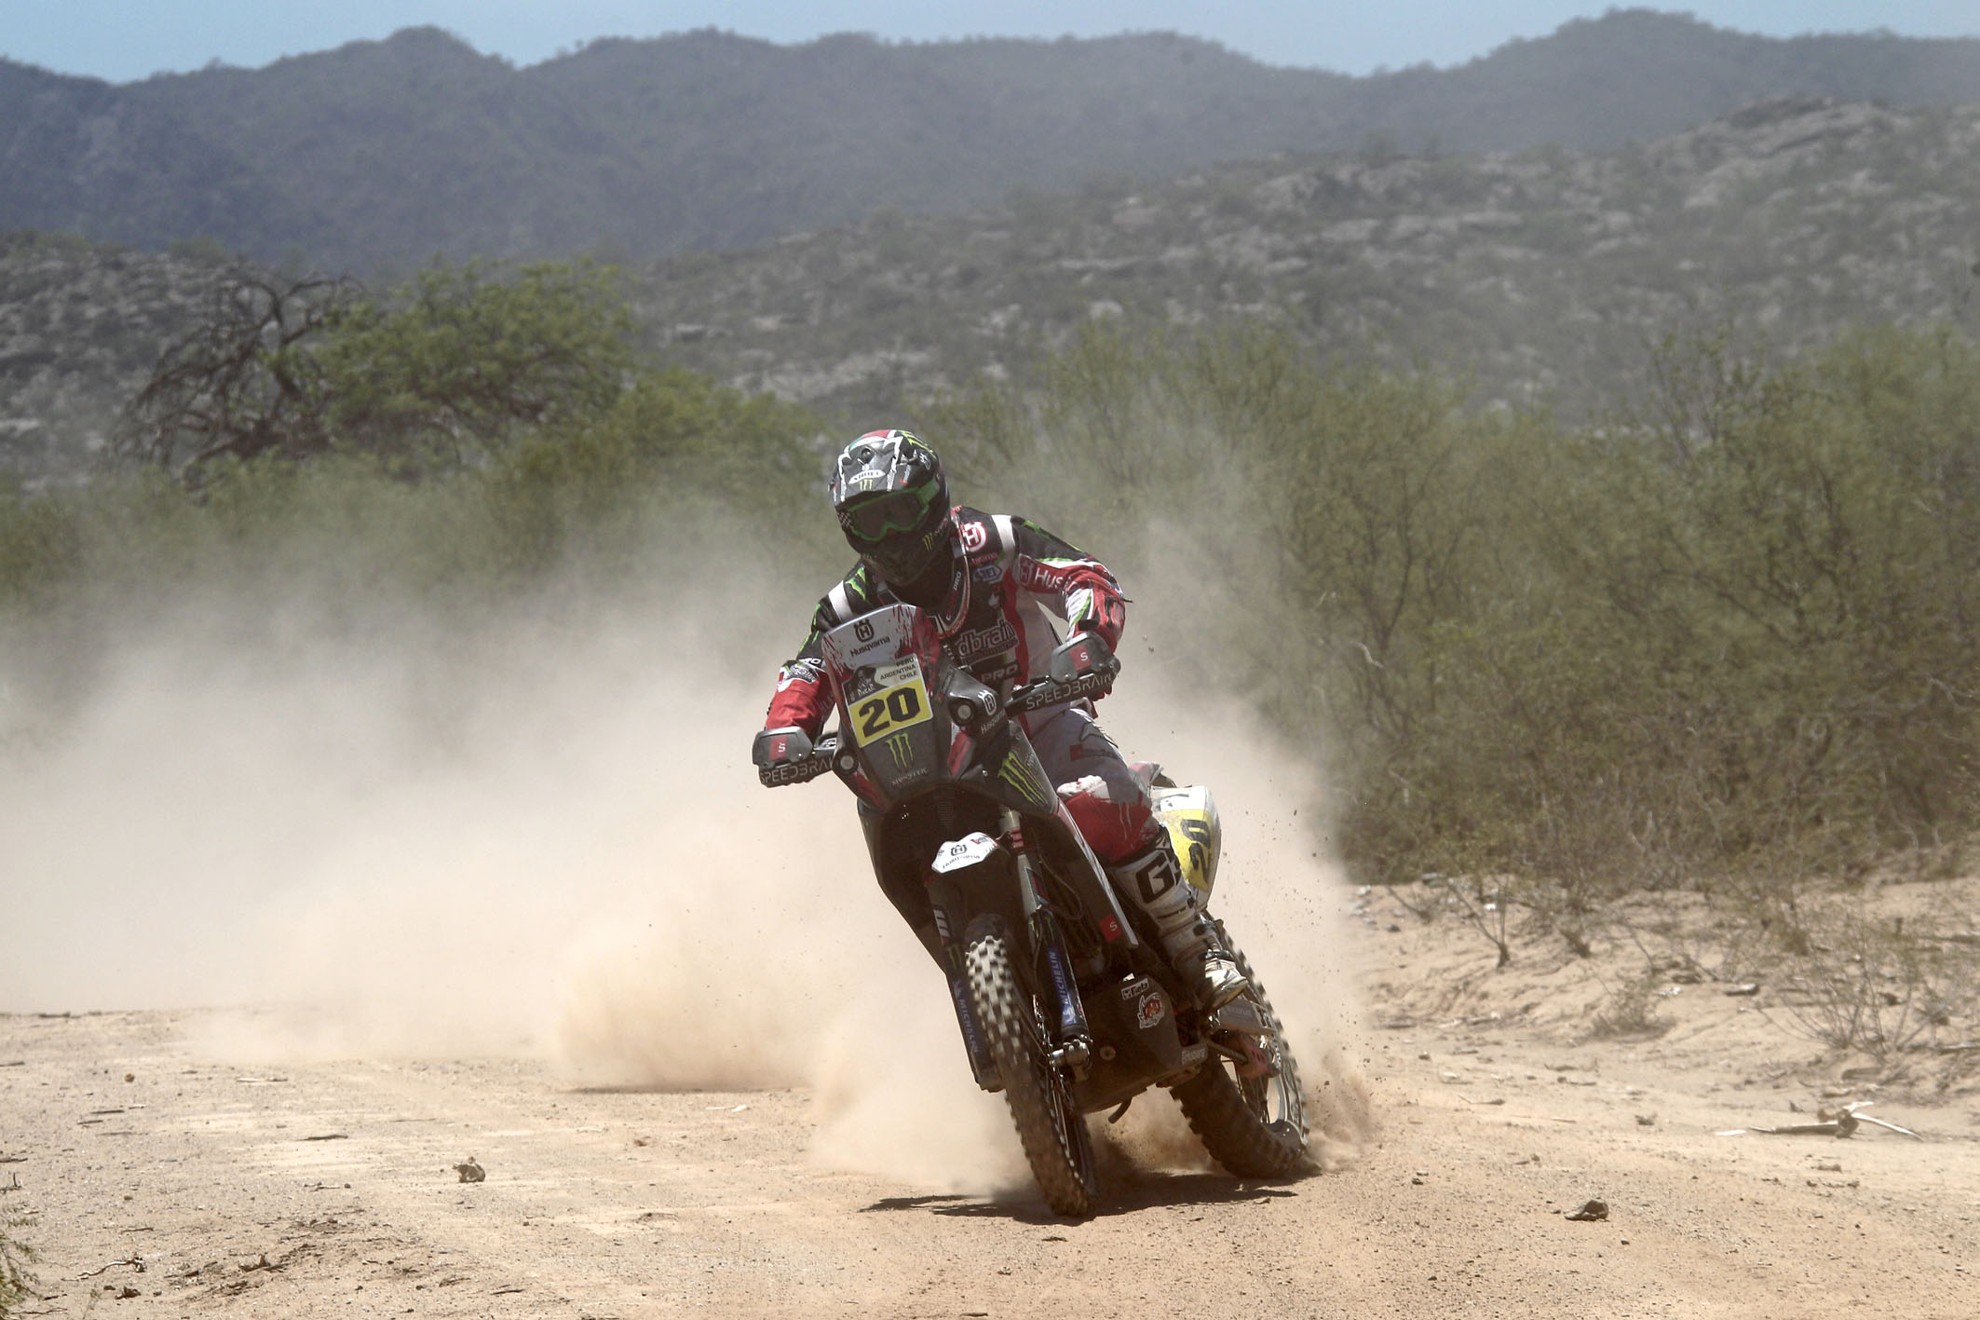 Dakar 2013 – Goncalves on the podium again for Husqvarna Rallye Team by Speedbrain